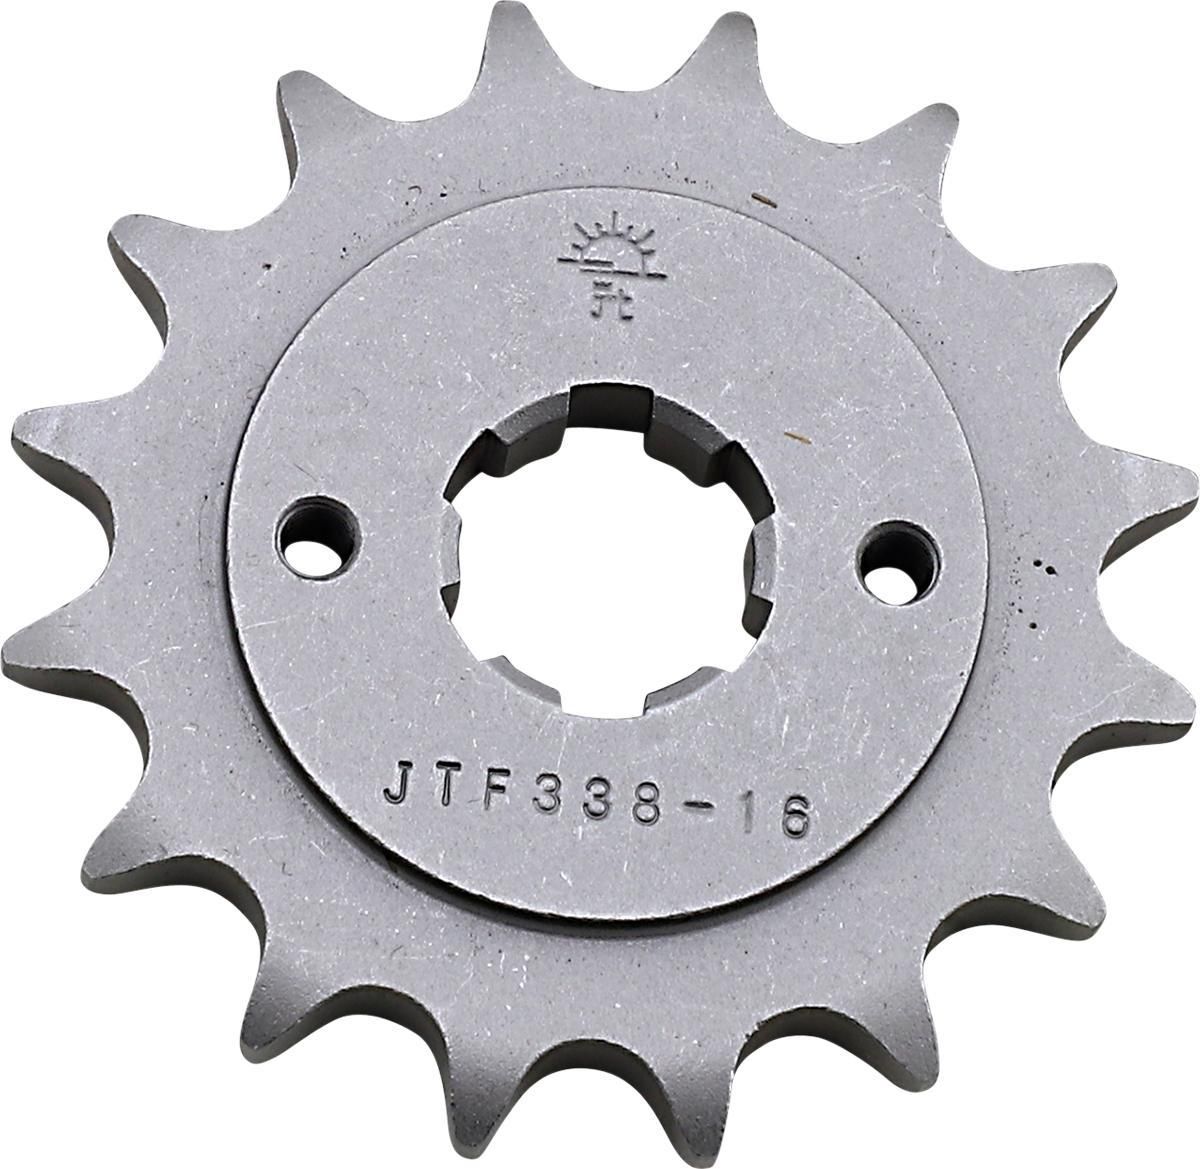 3EFW-JT-SPROCKET-JTF338-16 Counter Shaft Sprocket - 16-Tooth